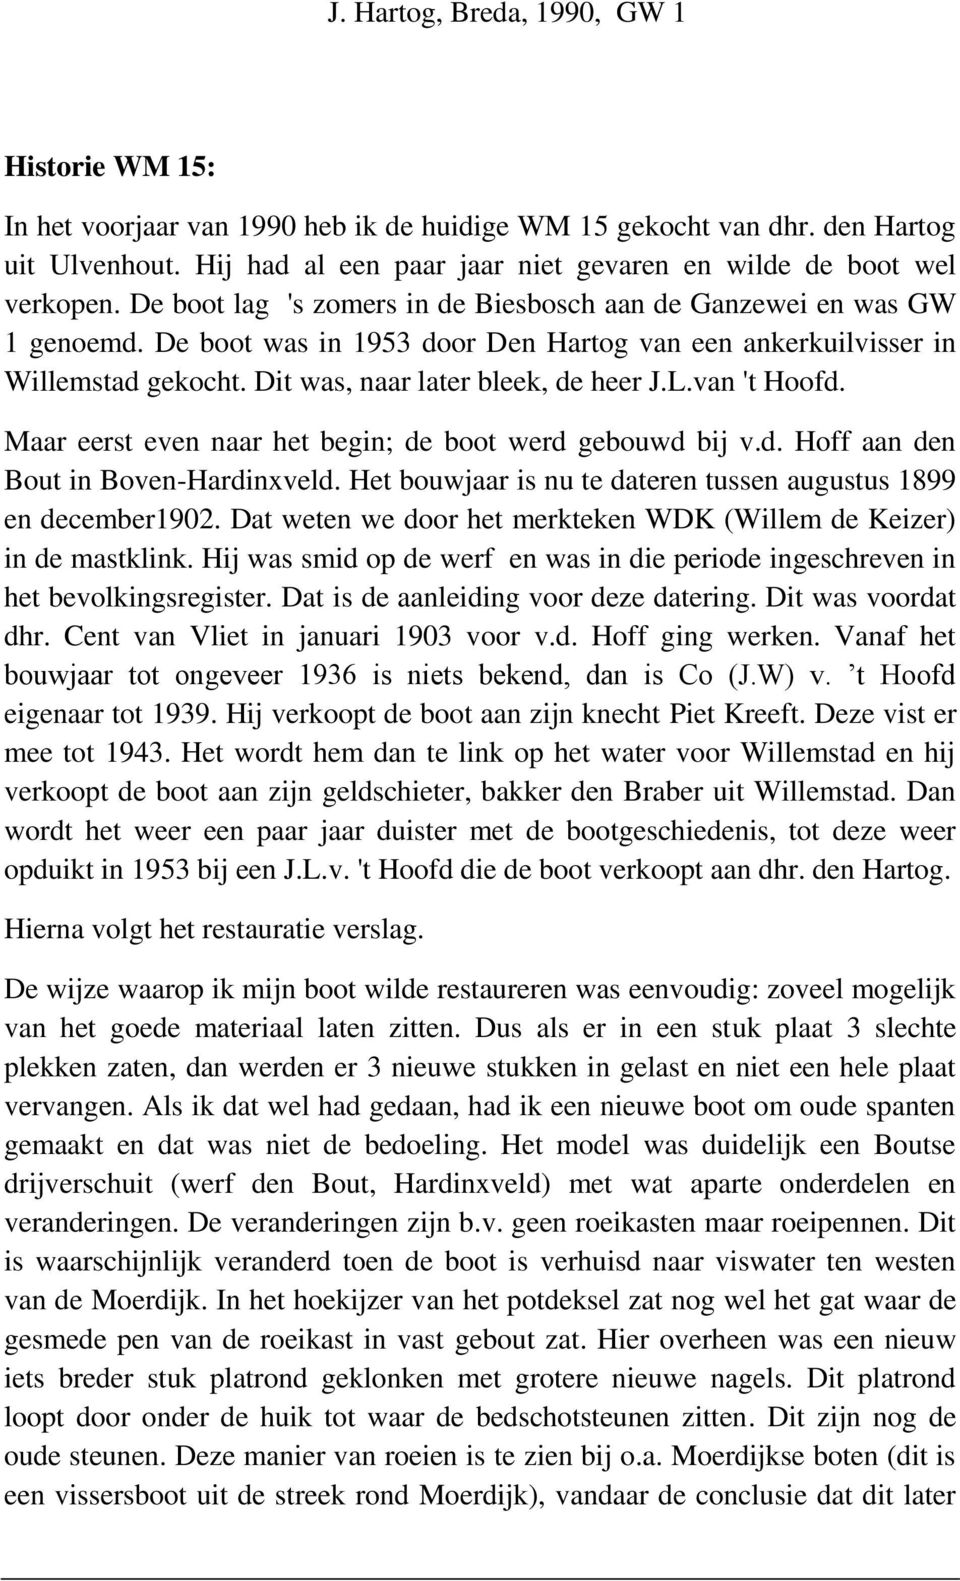 De boot was in 1953 door Den Hartog van een ankerkuilvisser in Willemstad gekocht. Dit was, naar later bleek, de heer J.L.van 't Hoofd. Maar eerst even naar het begin; de boot werd gebouwd bij v.d. Hoff aan den Bout in Boven-Hardinxveld.